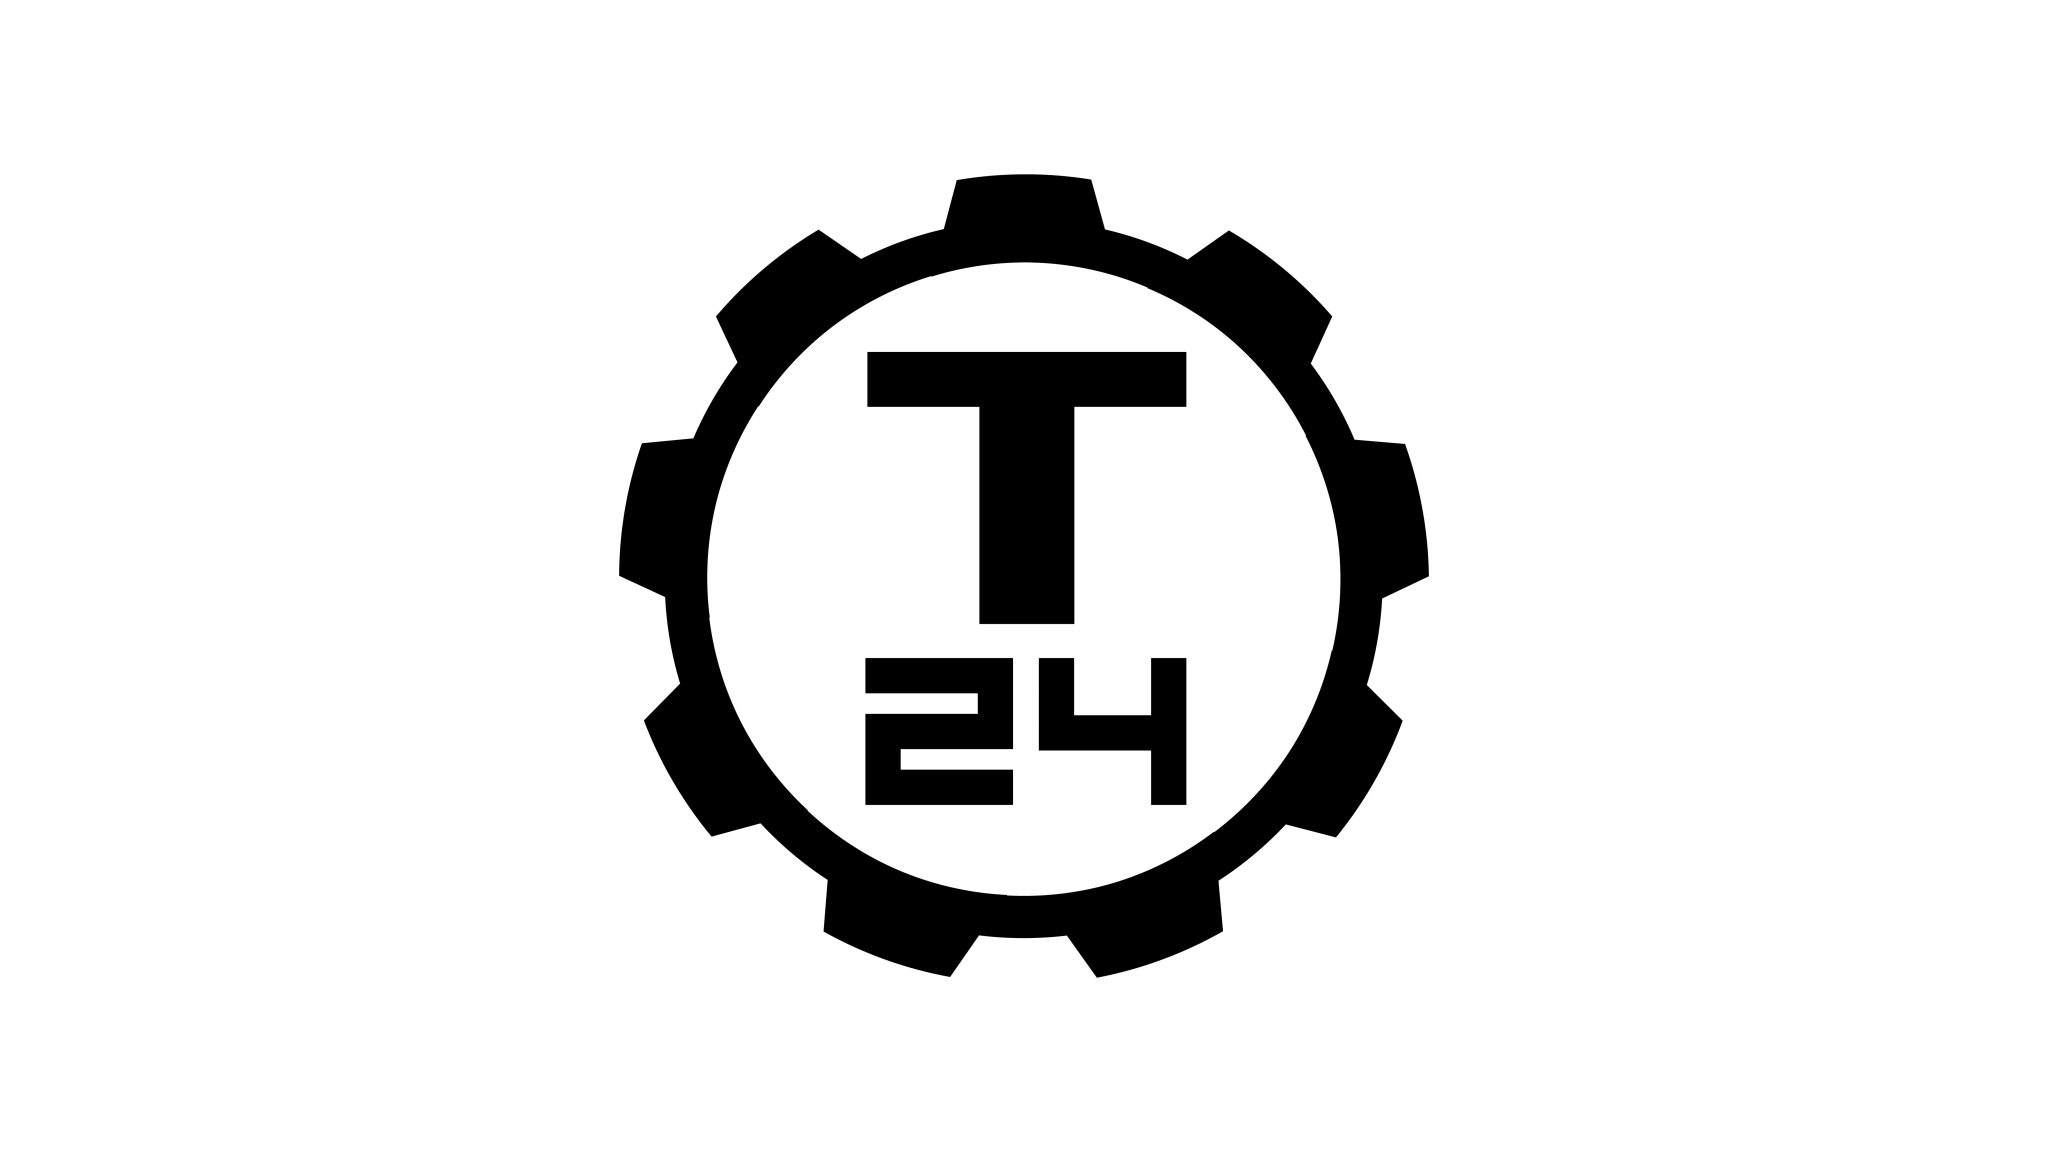 Программа передач на сегодня канал т24 москва. Логотип канала т 24. Телеканал т24 логотип. Техно 24. Телеканал 24 Техно.